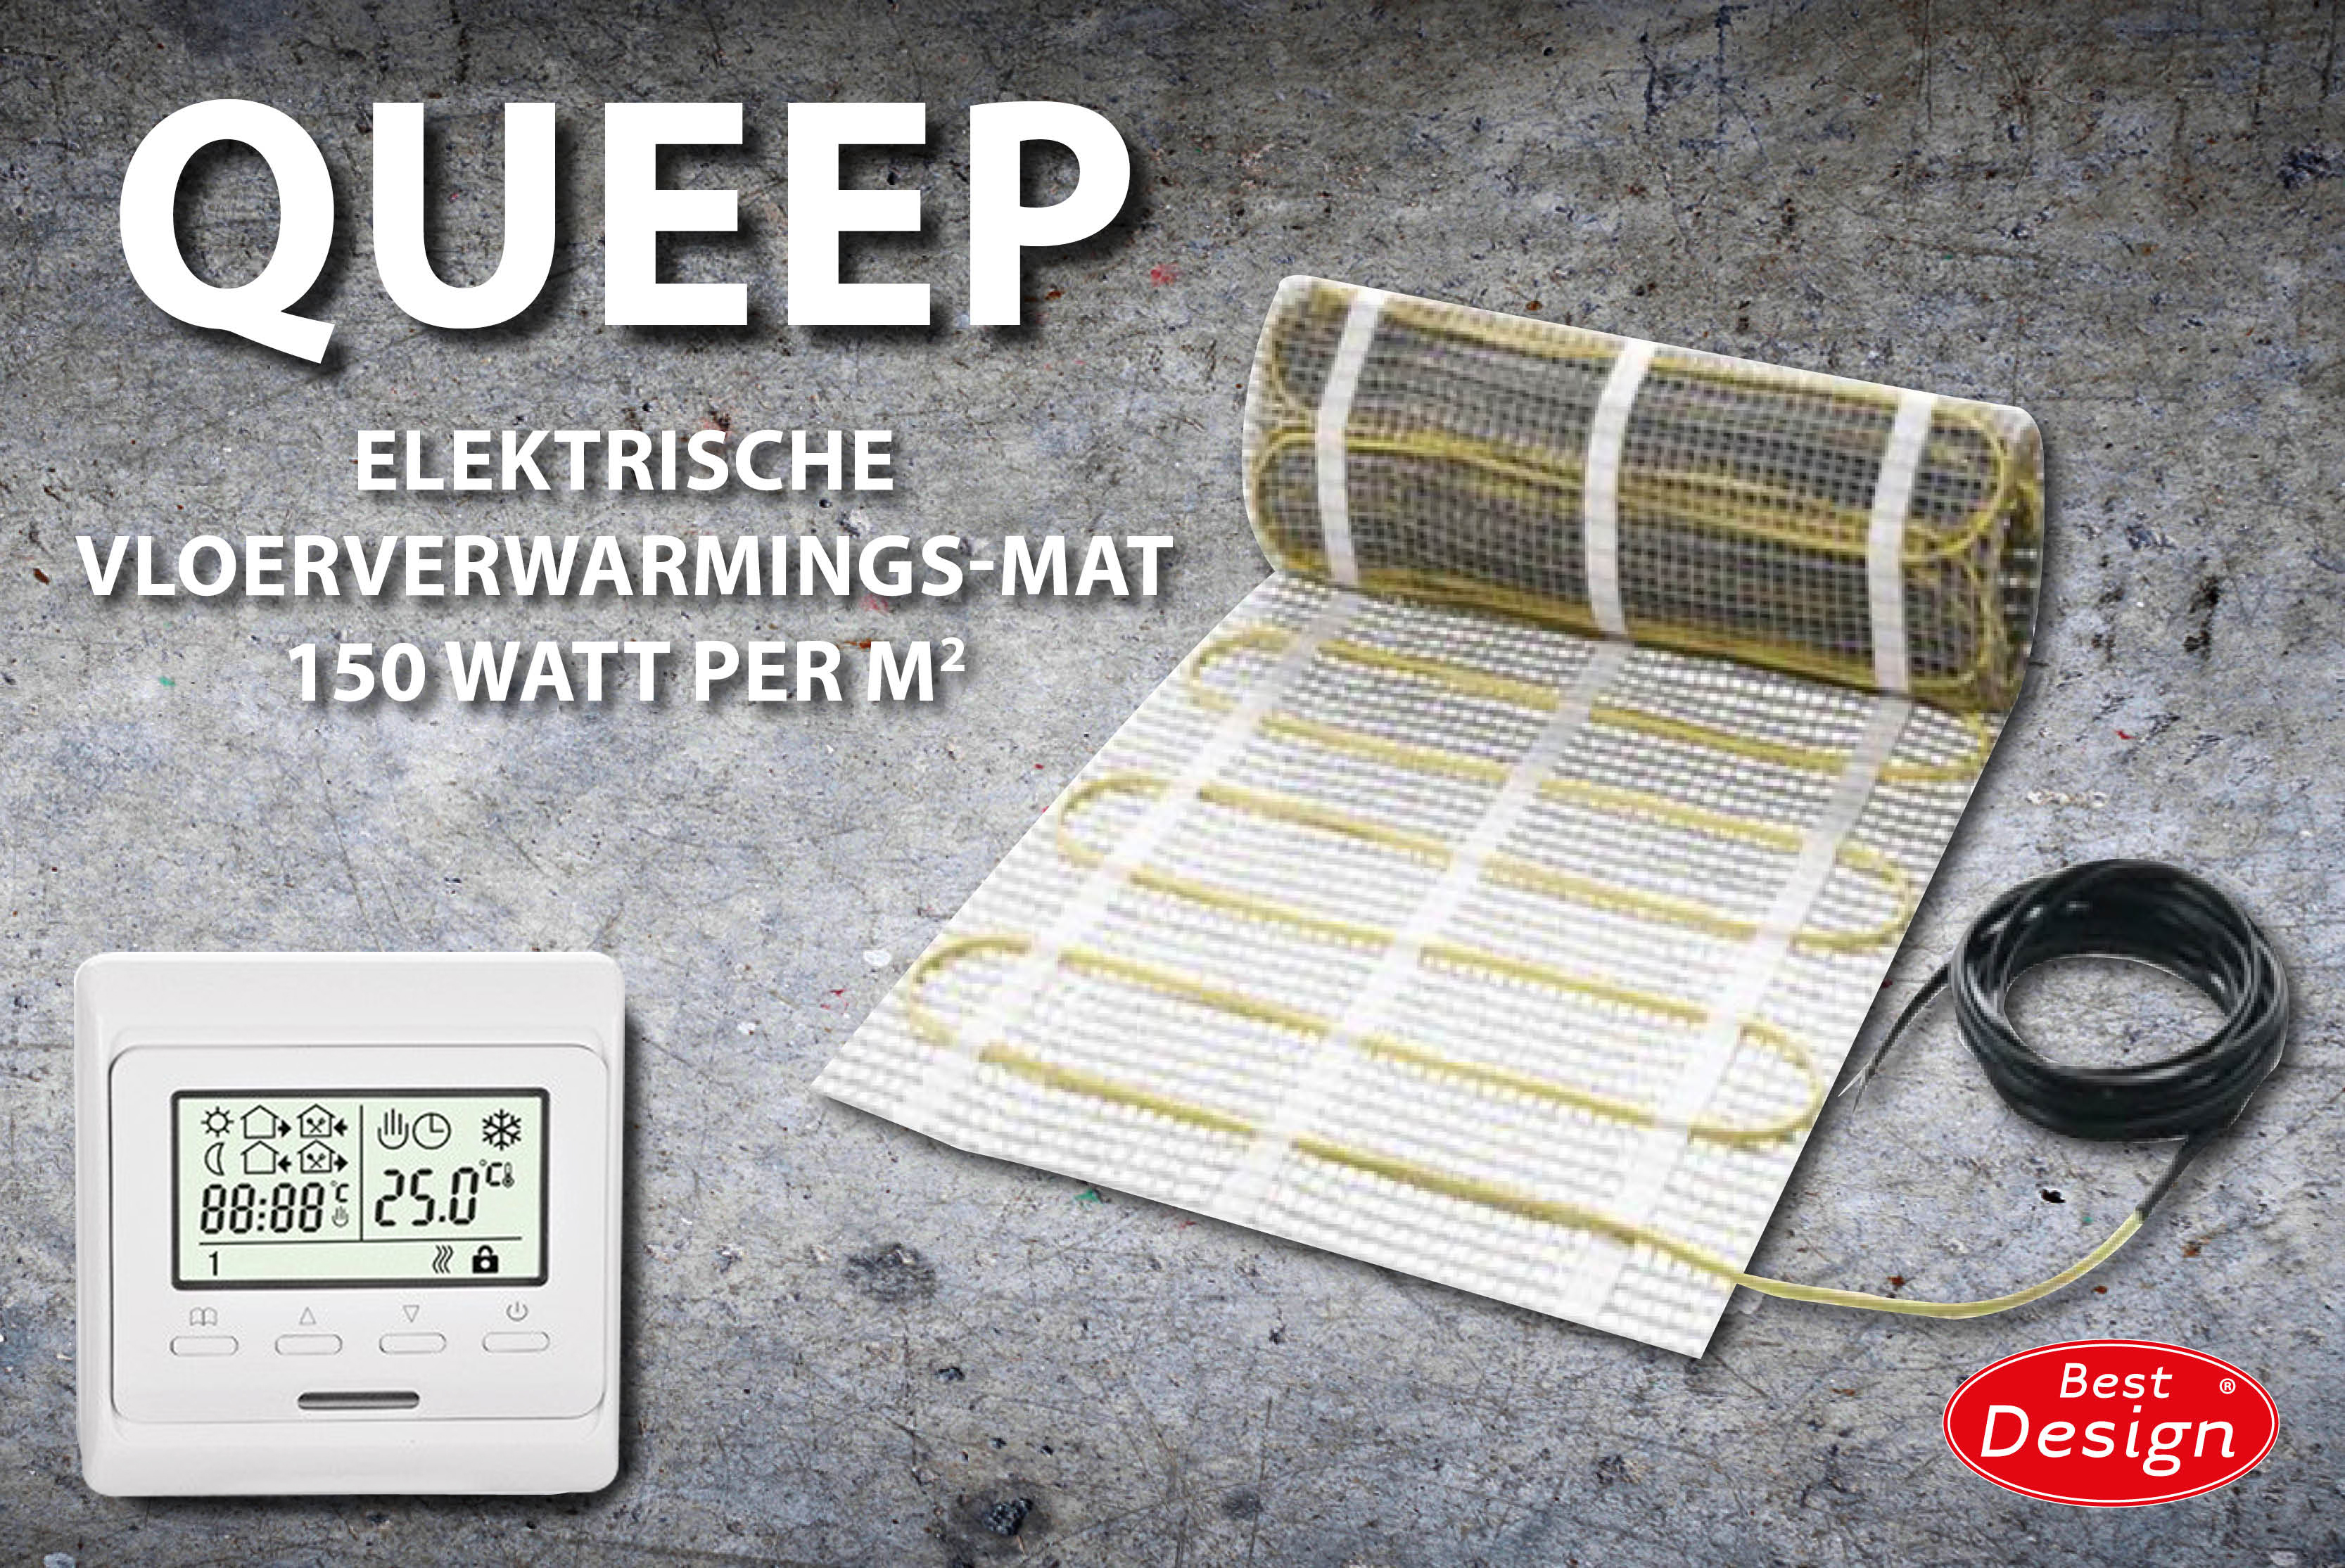 Best-Design Queep elektrische vloerverwarmings-mat 6.0 m2 Top Merken Winkel